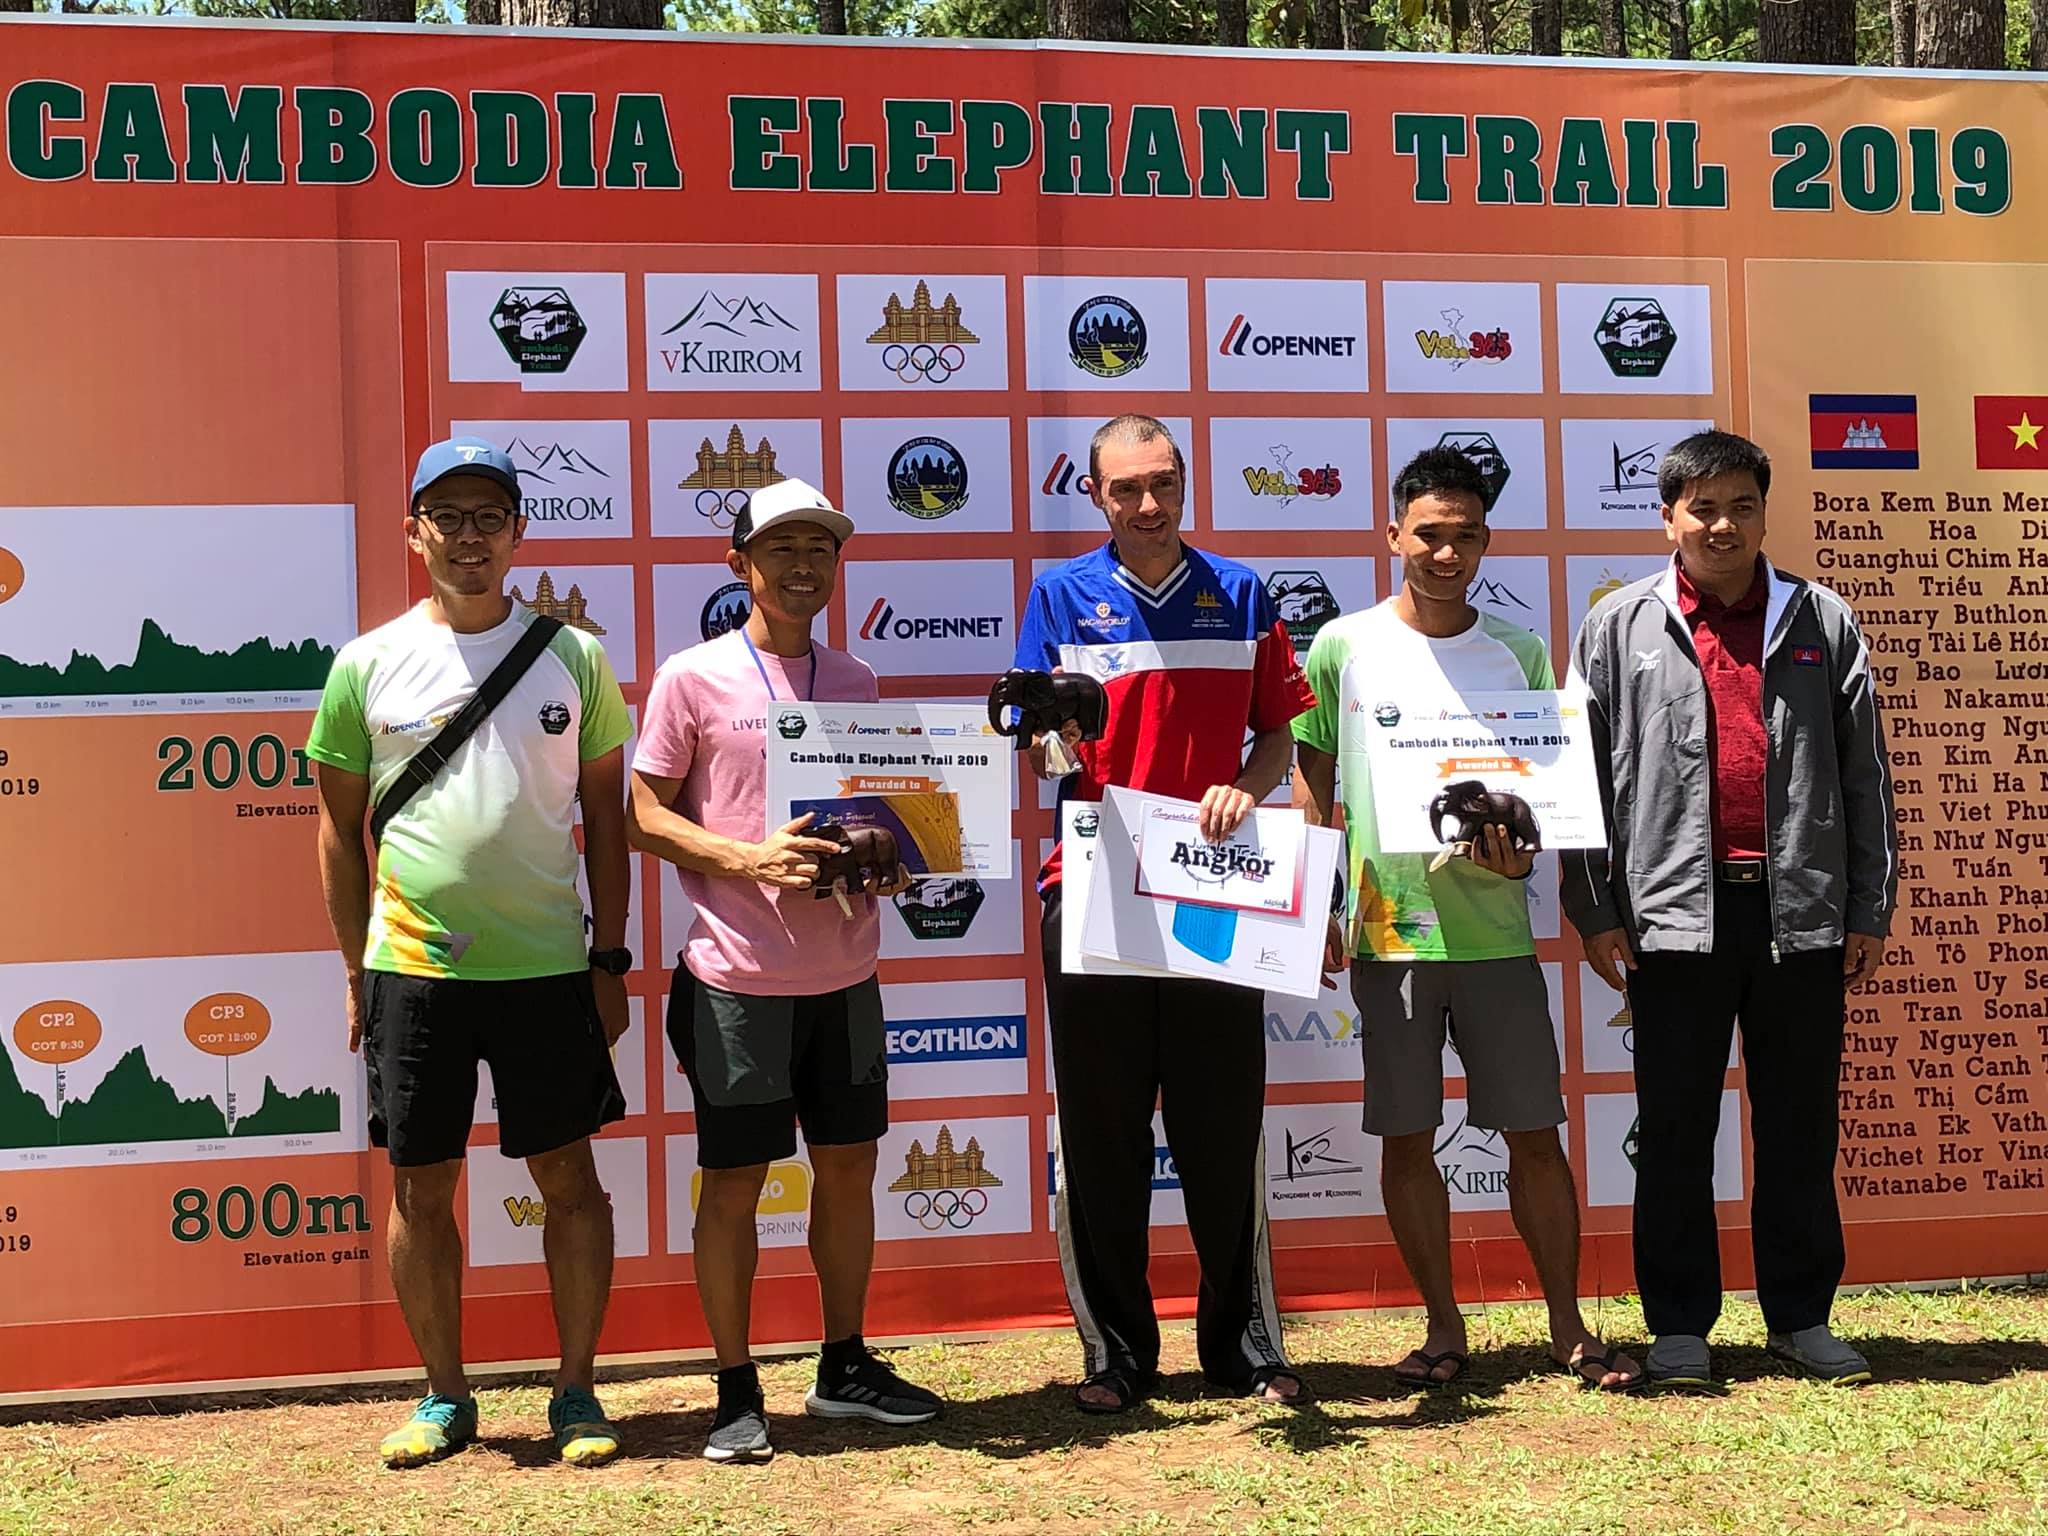 Chi ‘Kenya’ vô địch giải chạy địa hình lần đầu tổ chức ở Campuchia